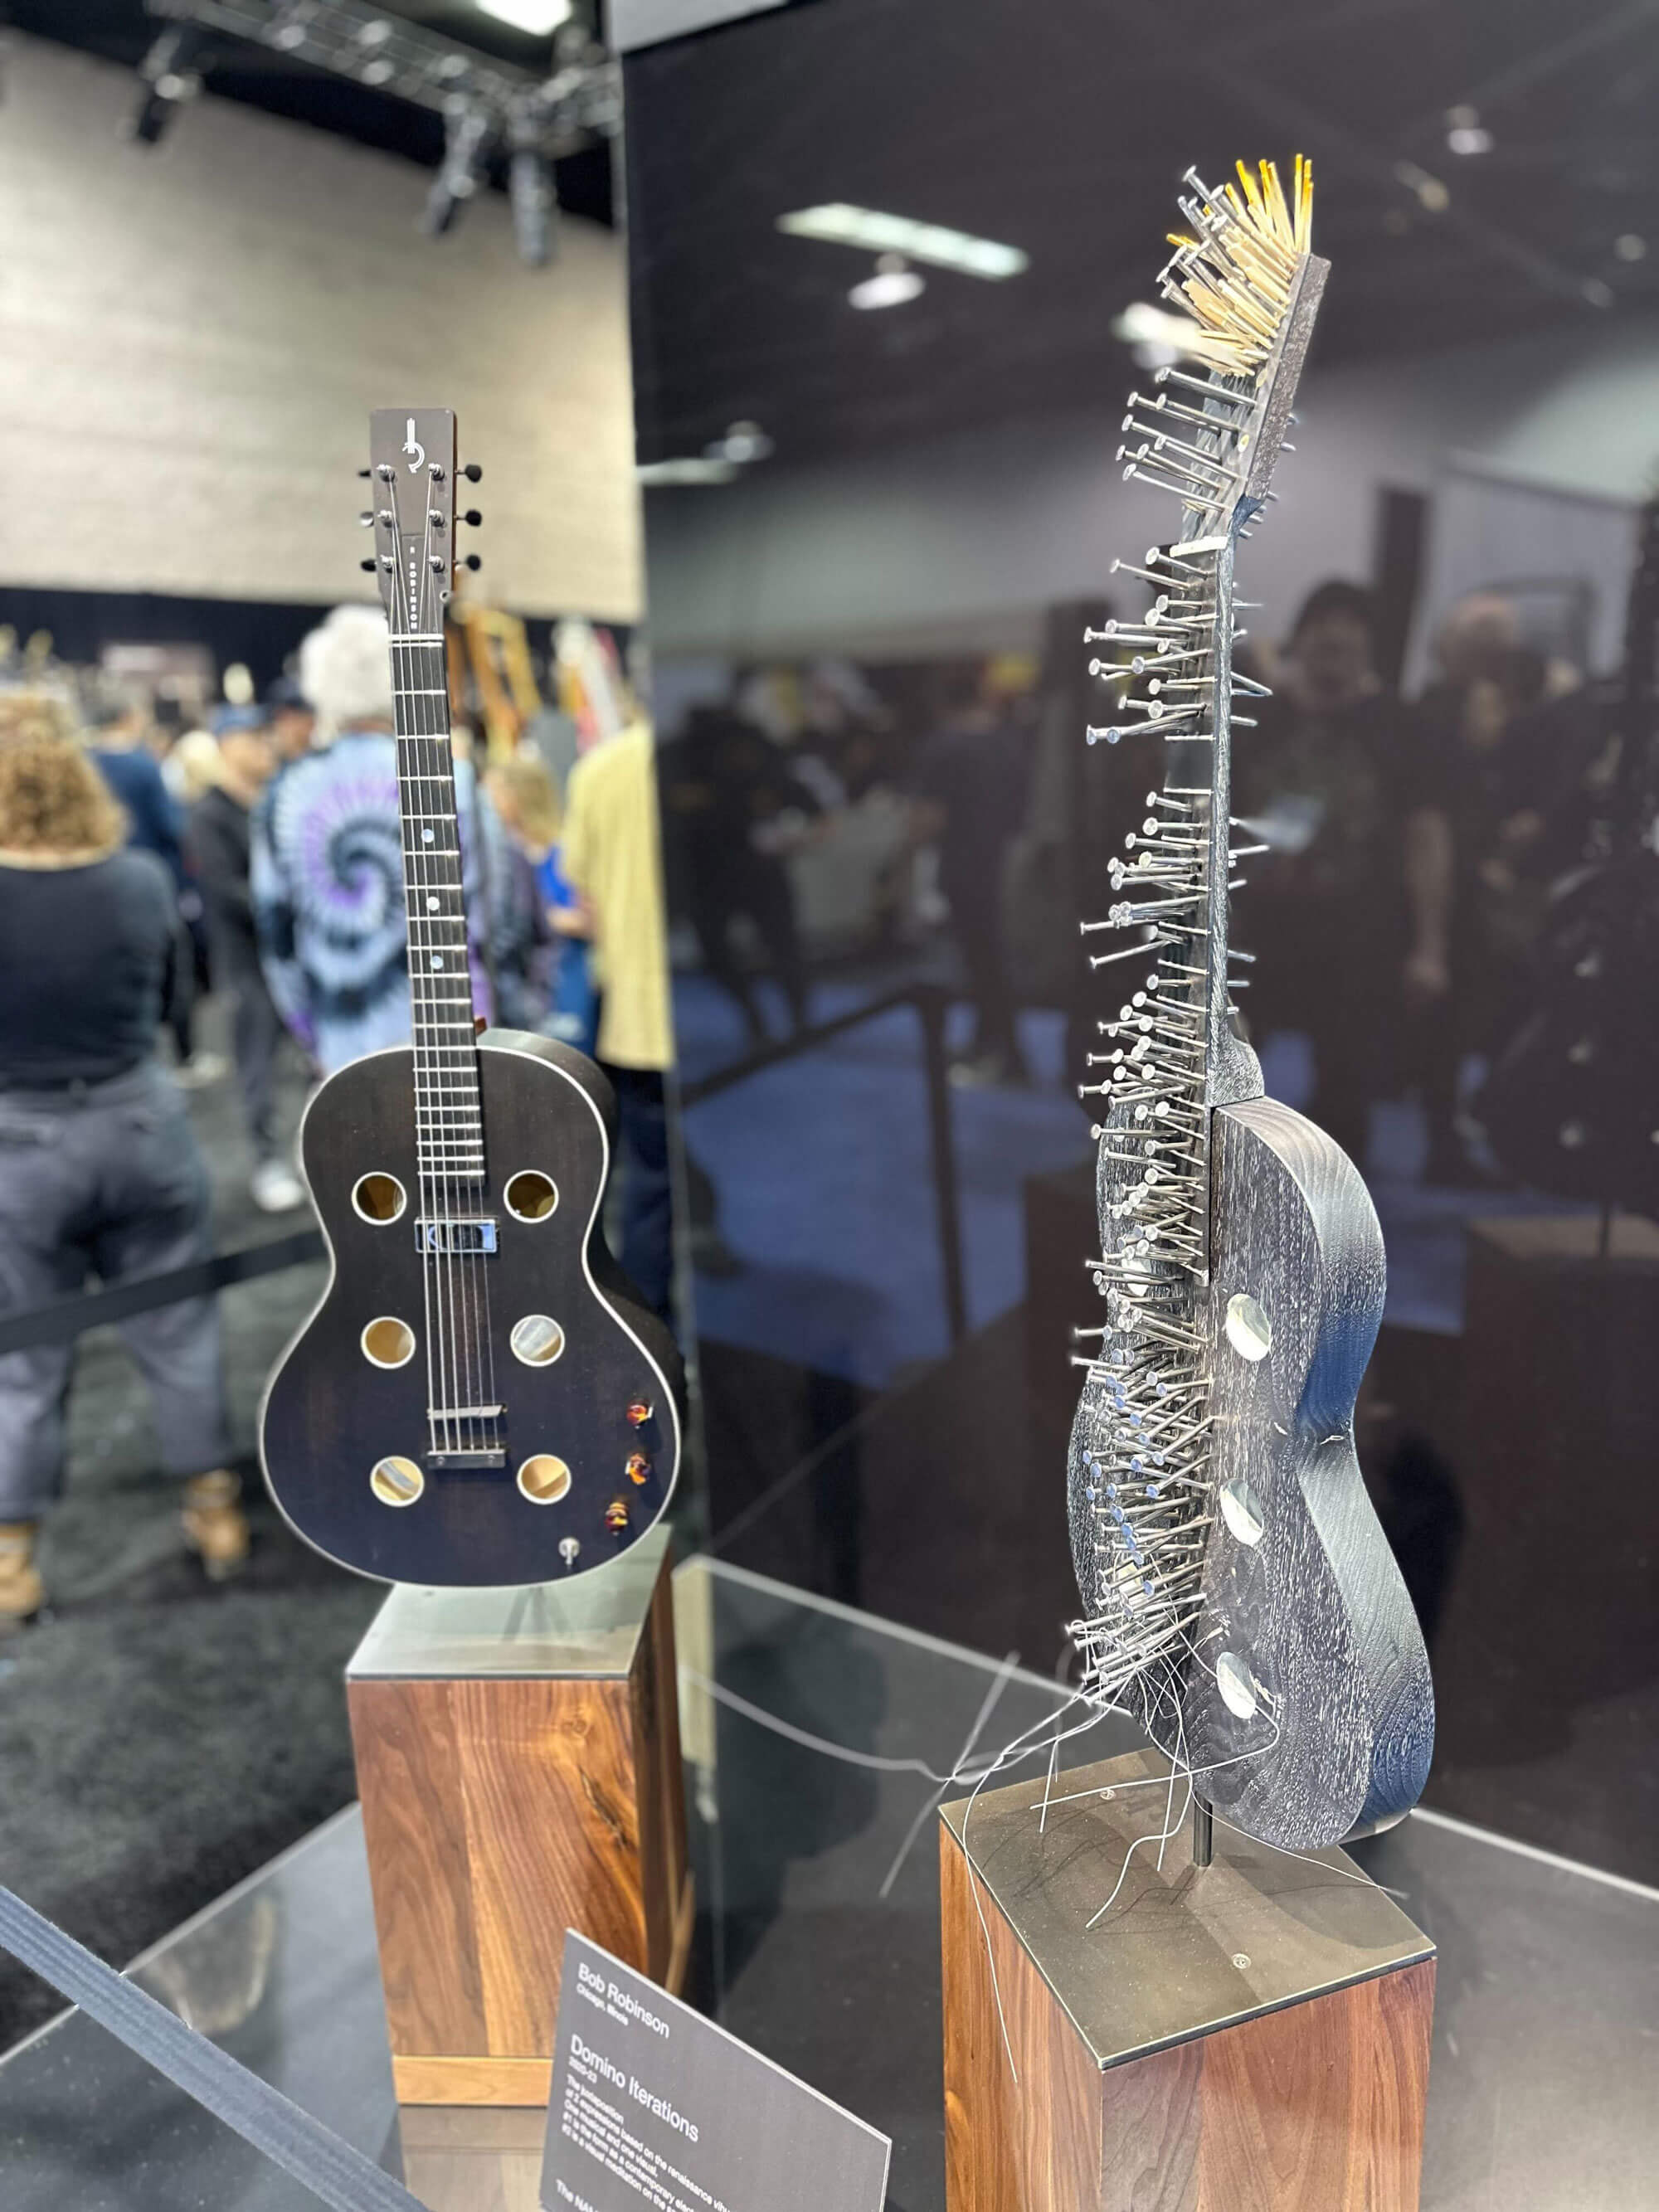 Nail guitar on display at NAMM